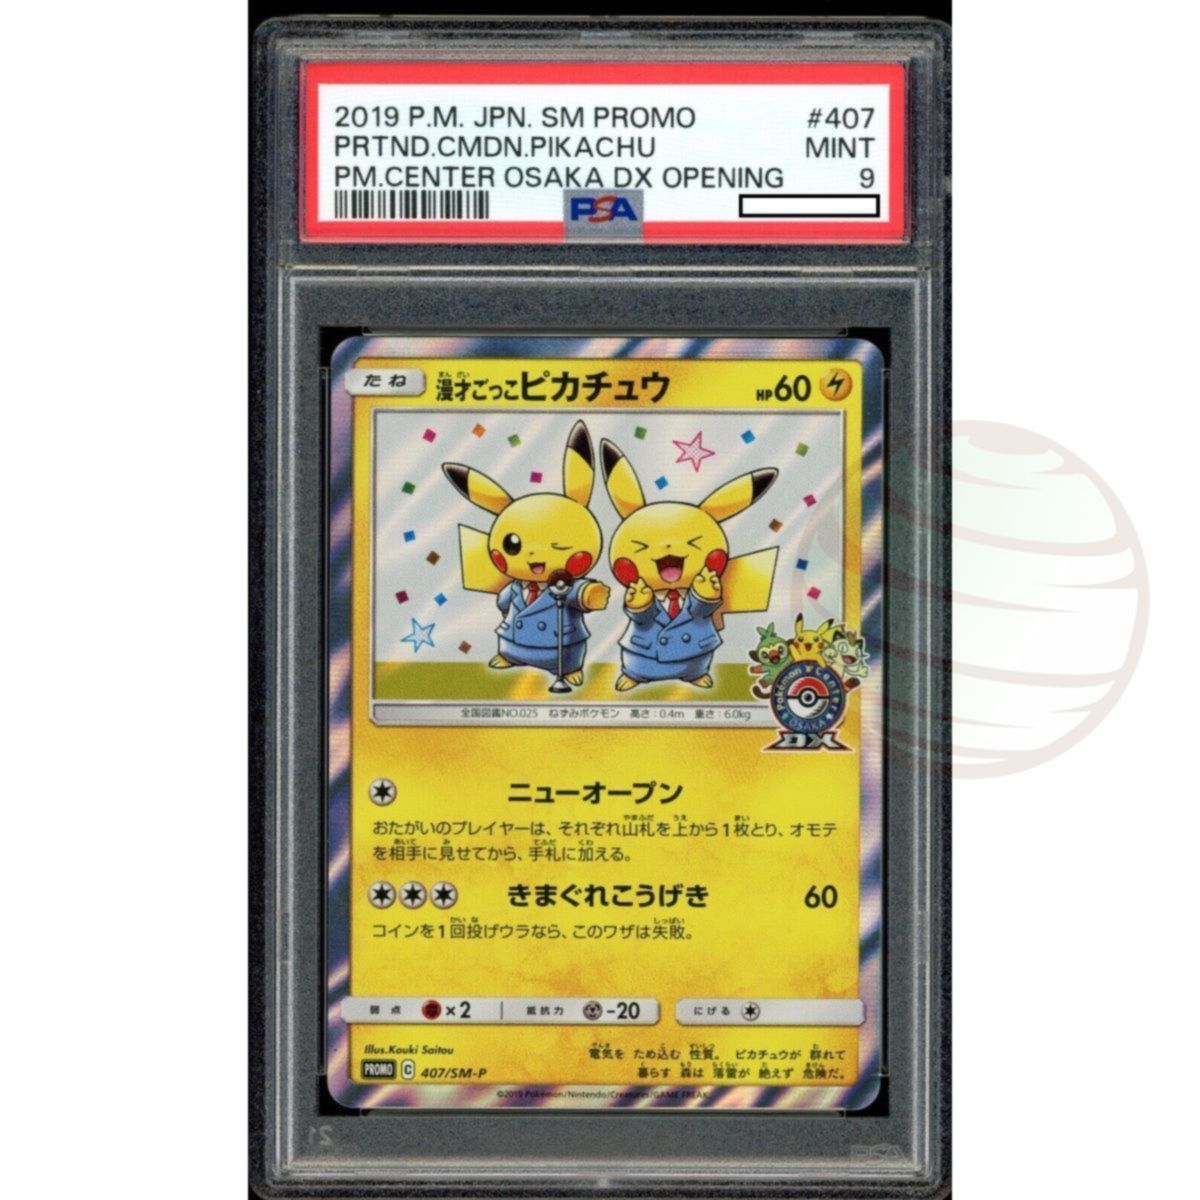 Item [PSA 9 - Mint] - Carte Gradée - Pikachu 407/SM-P Pokémon Center Osaka DX 2019 - Pokémon - Japonais